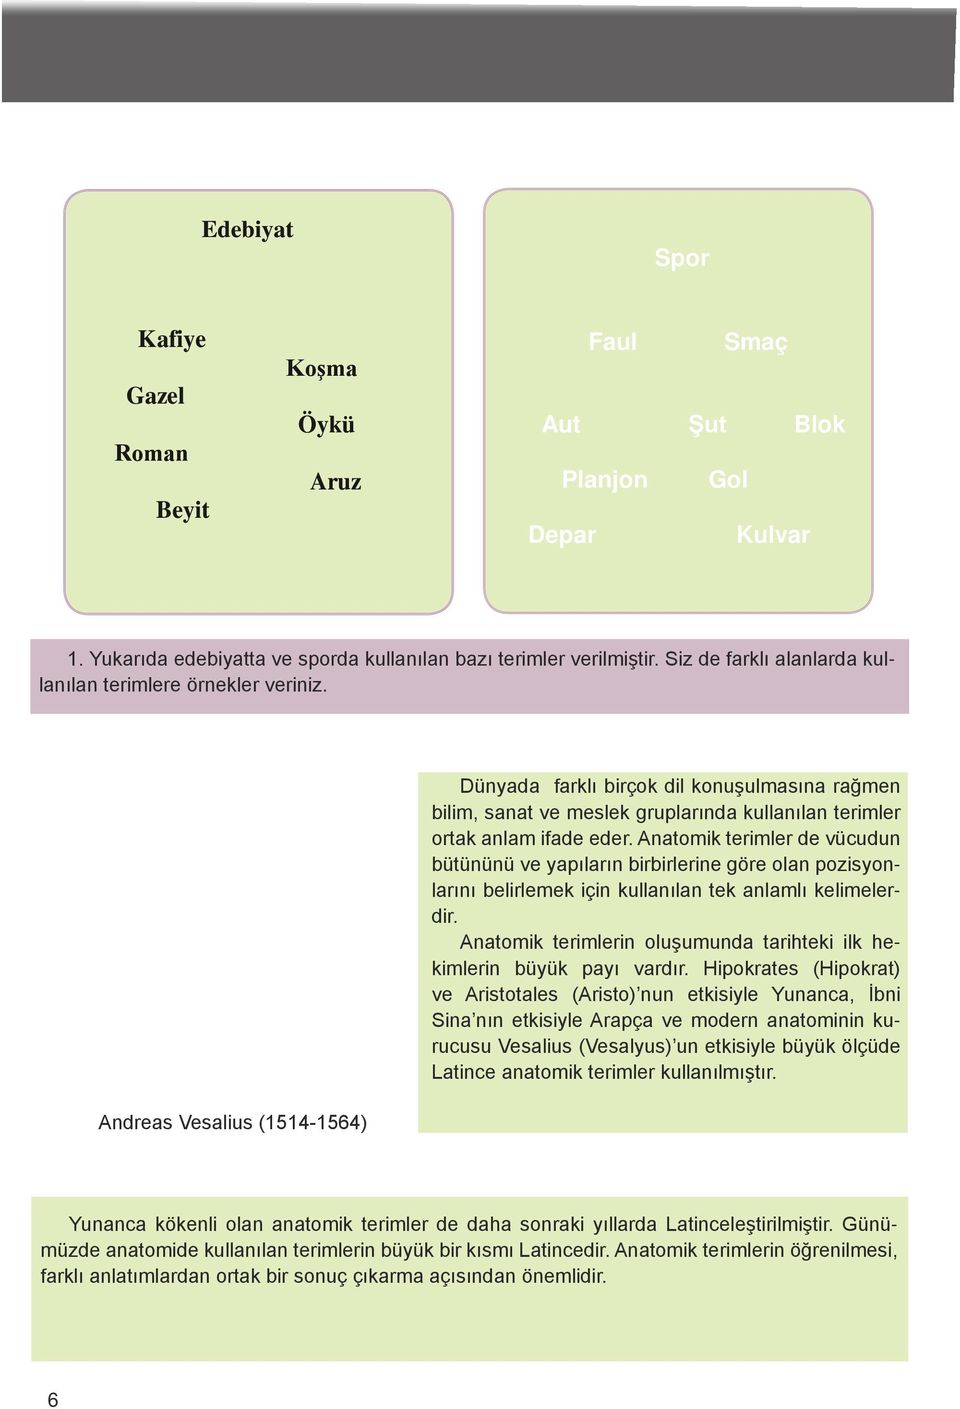 Andreas Vesalius (1514-1564) Dünyada farklı birçok dil konuşulmasına rağmen bilim, sanat ve meslek gruplarında kullanılan terimler ortak anlam ifade eder.